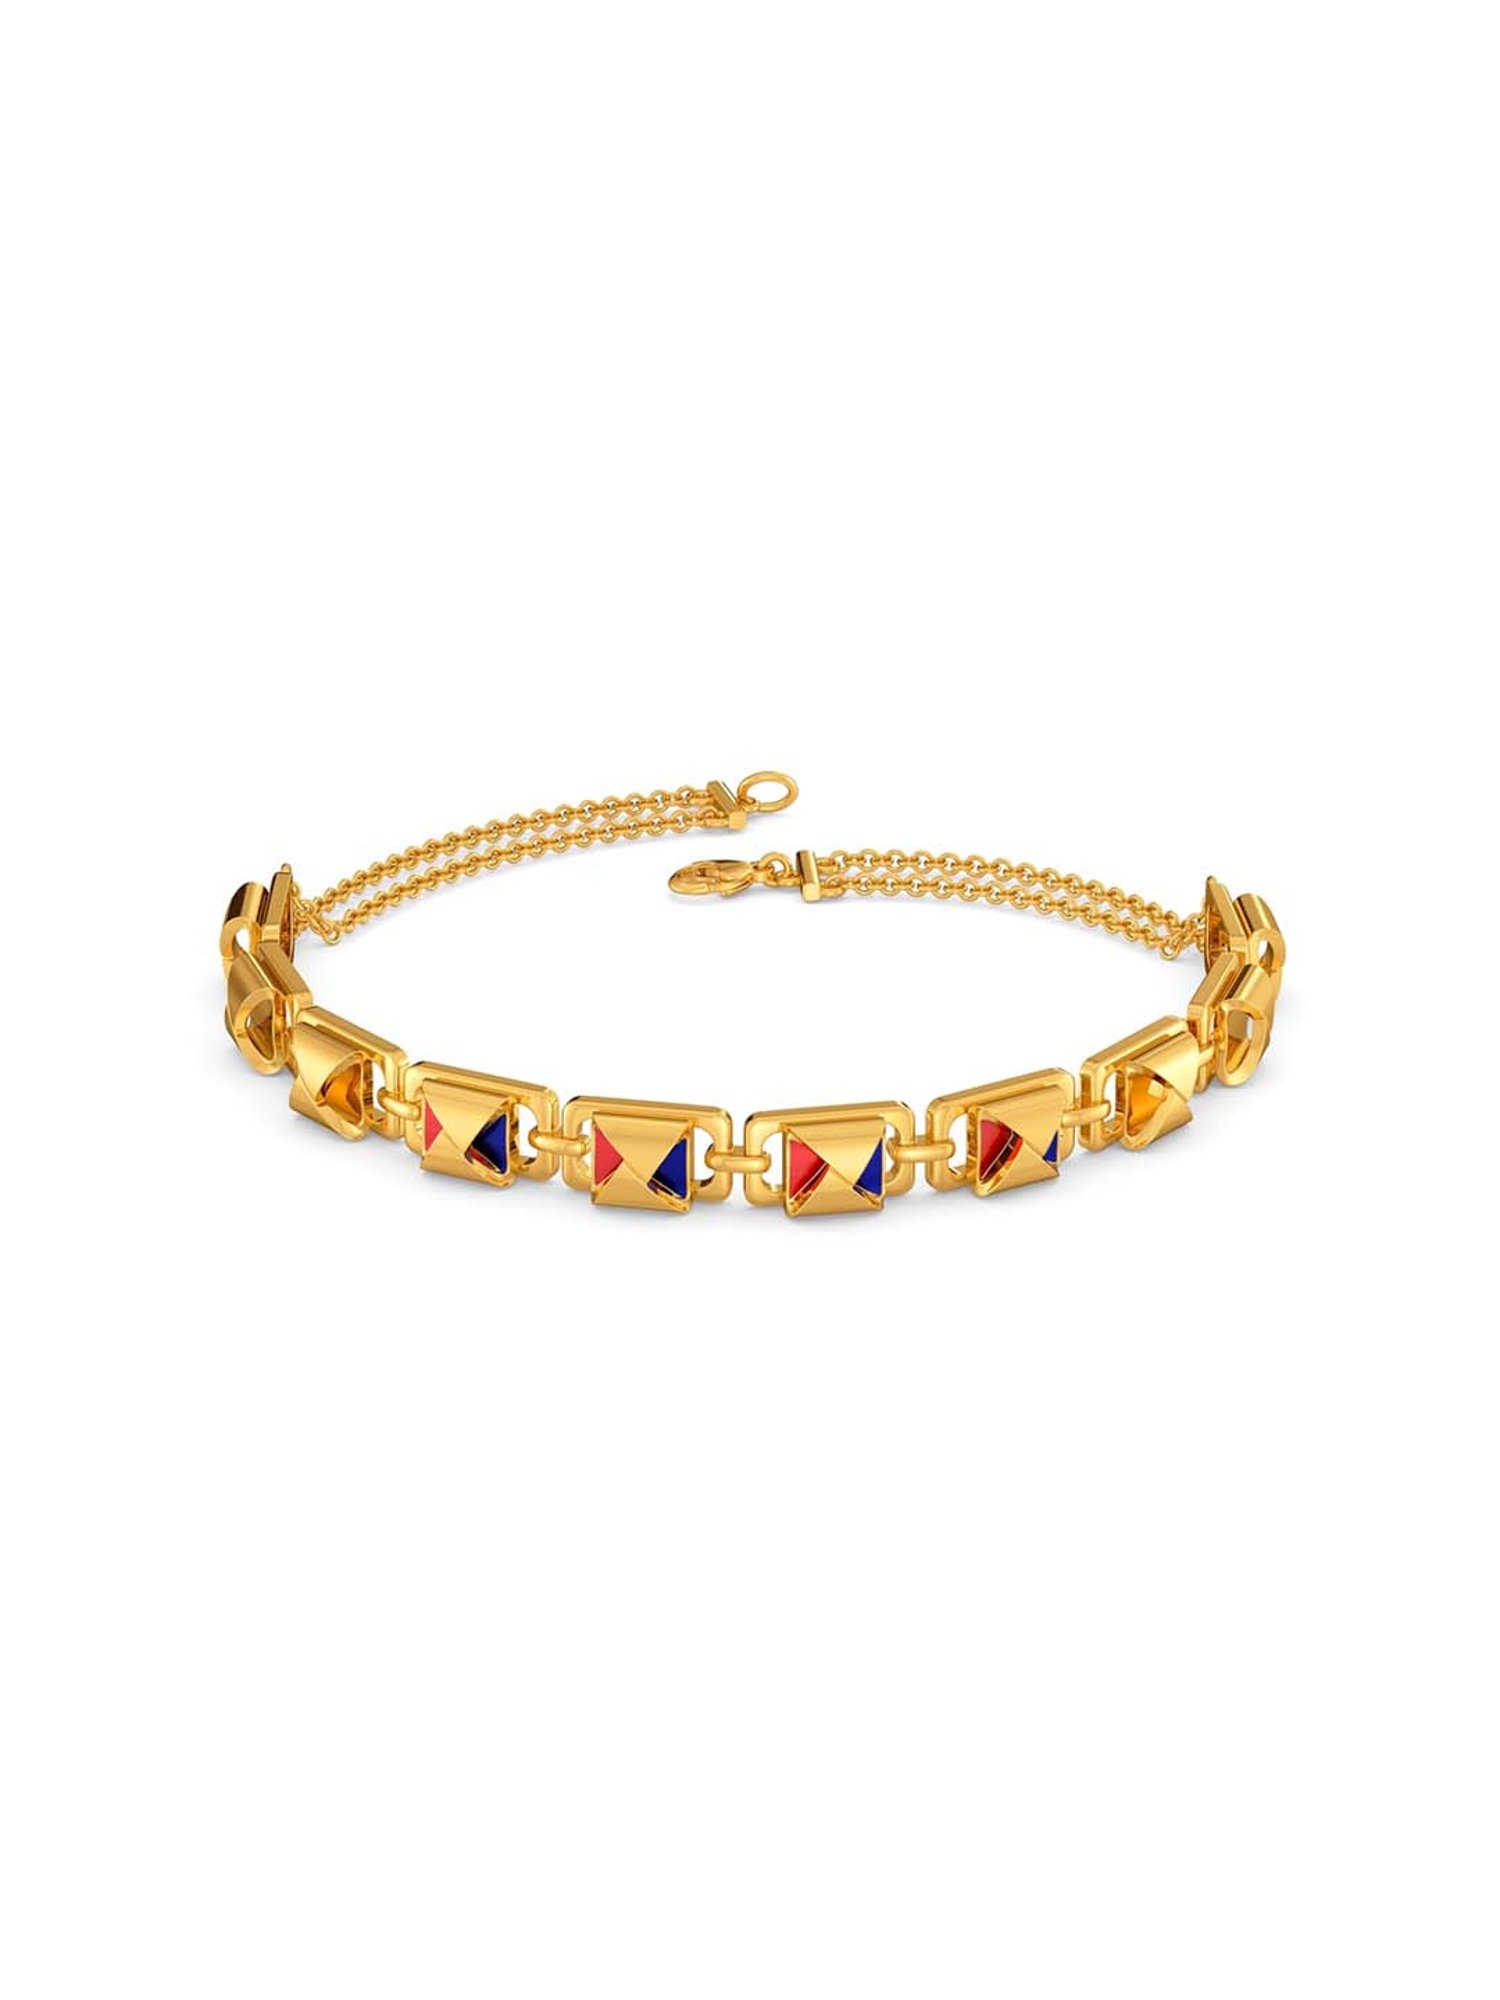 14k Gold Diamond Spike Bracelet 160cts  Anaheim Jewelry